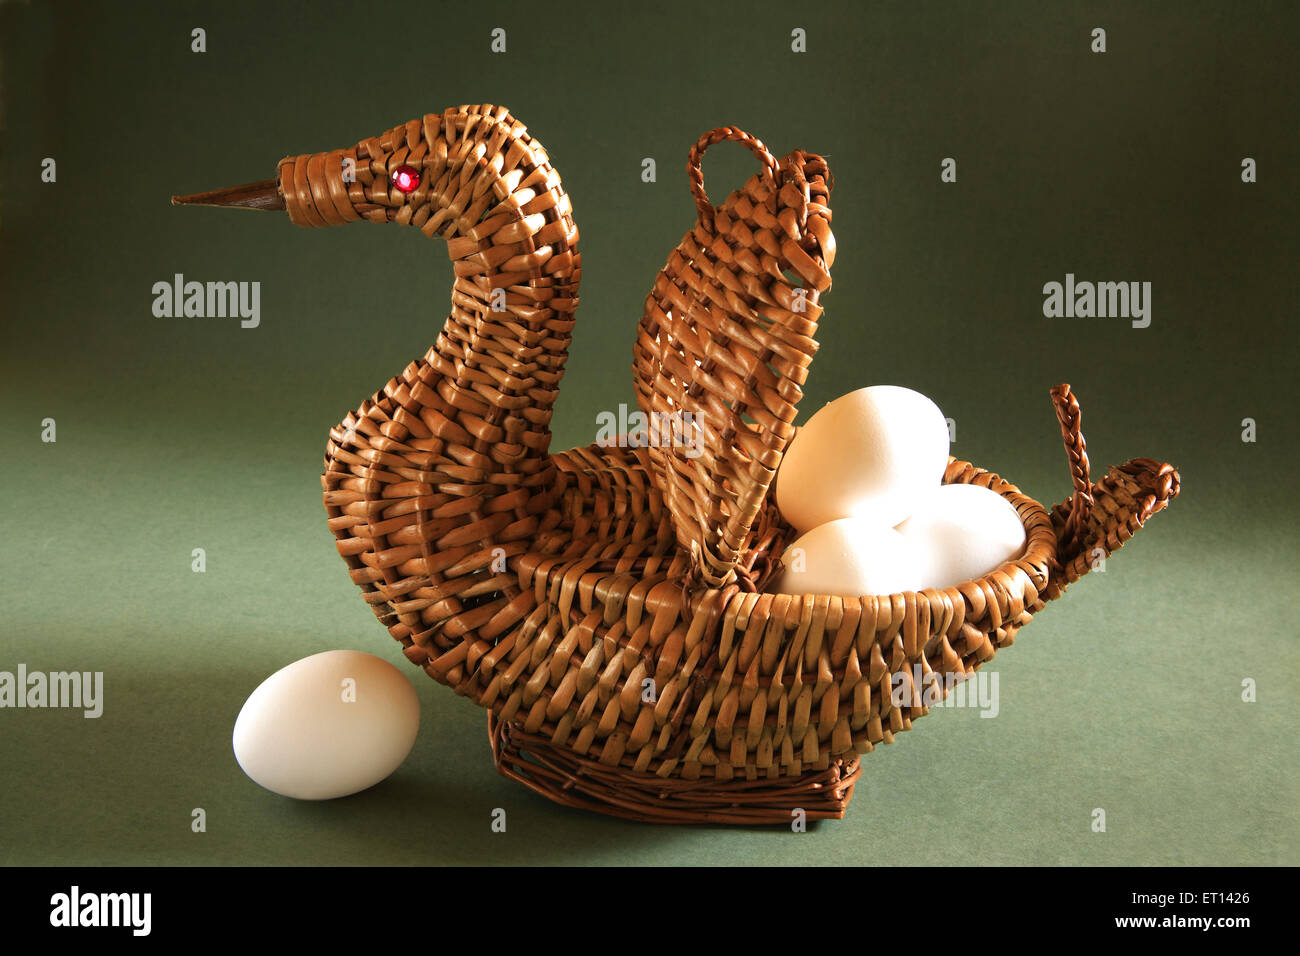 Artistico cestello di canna forma di anatra con uova su sfondo verde Foto Stock